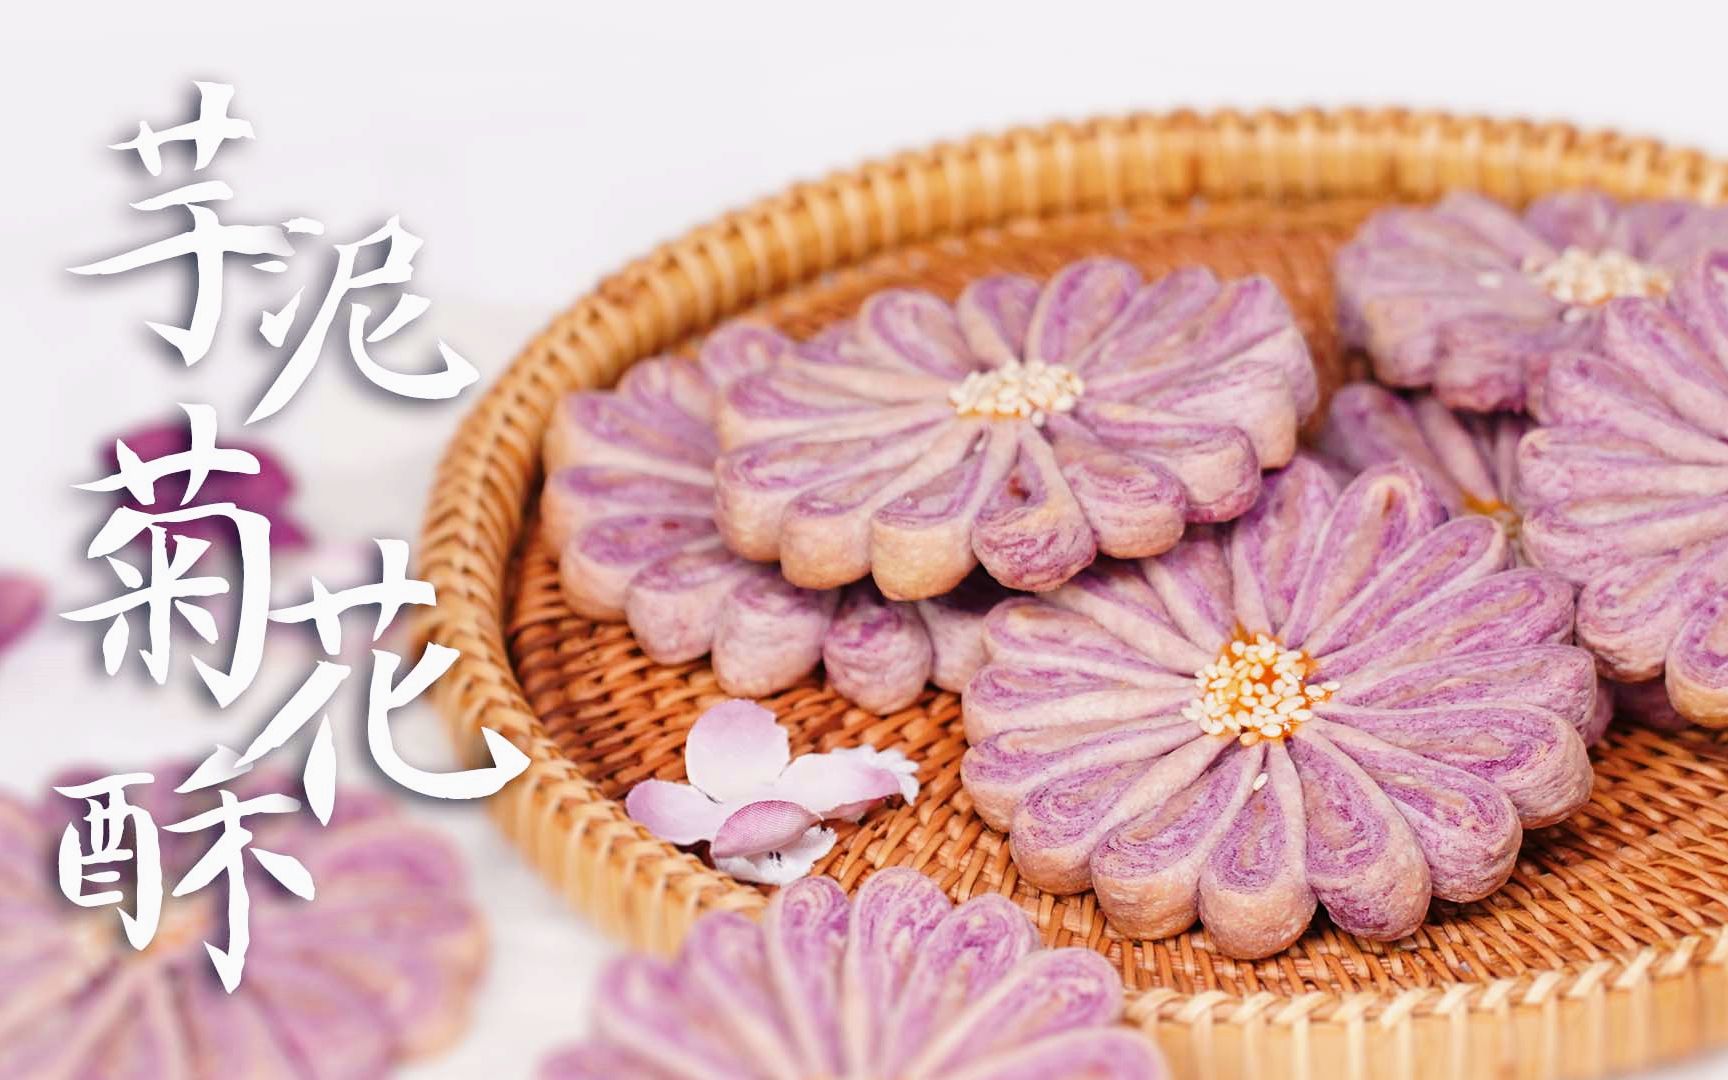 菊花酥皮-名特食品图谱-图片